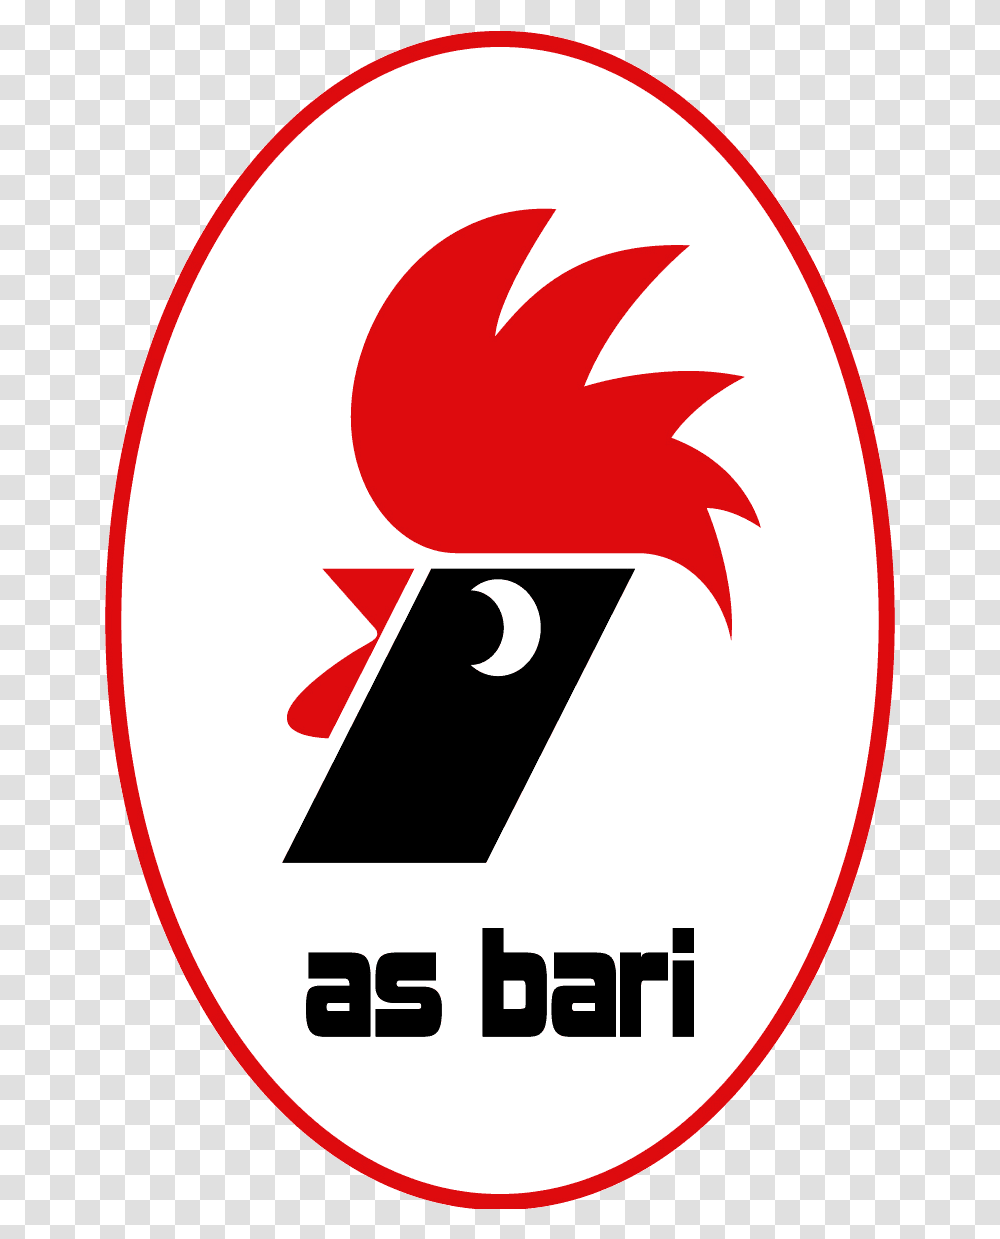 Most Unusual Football Club Badges Logo Bari, Number, Symbol, Text, Label Transparent Png